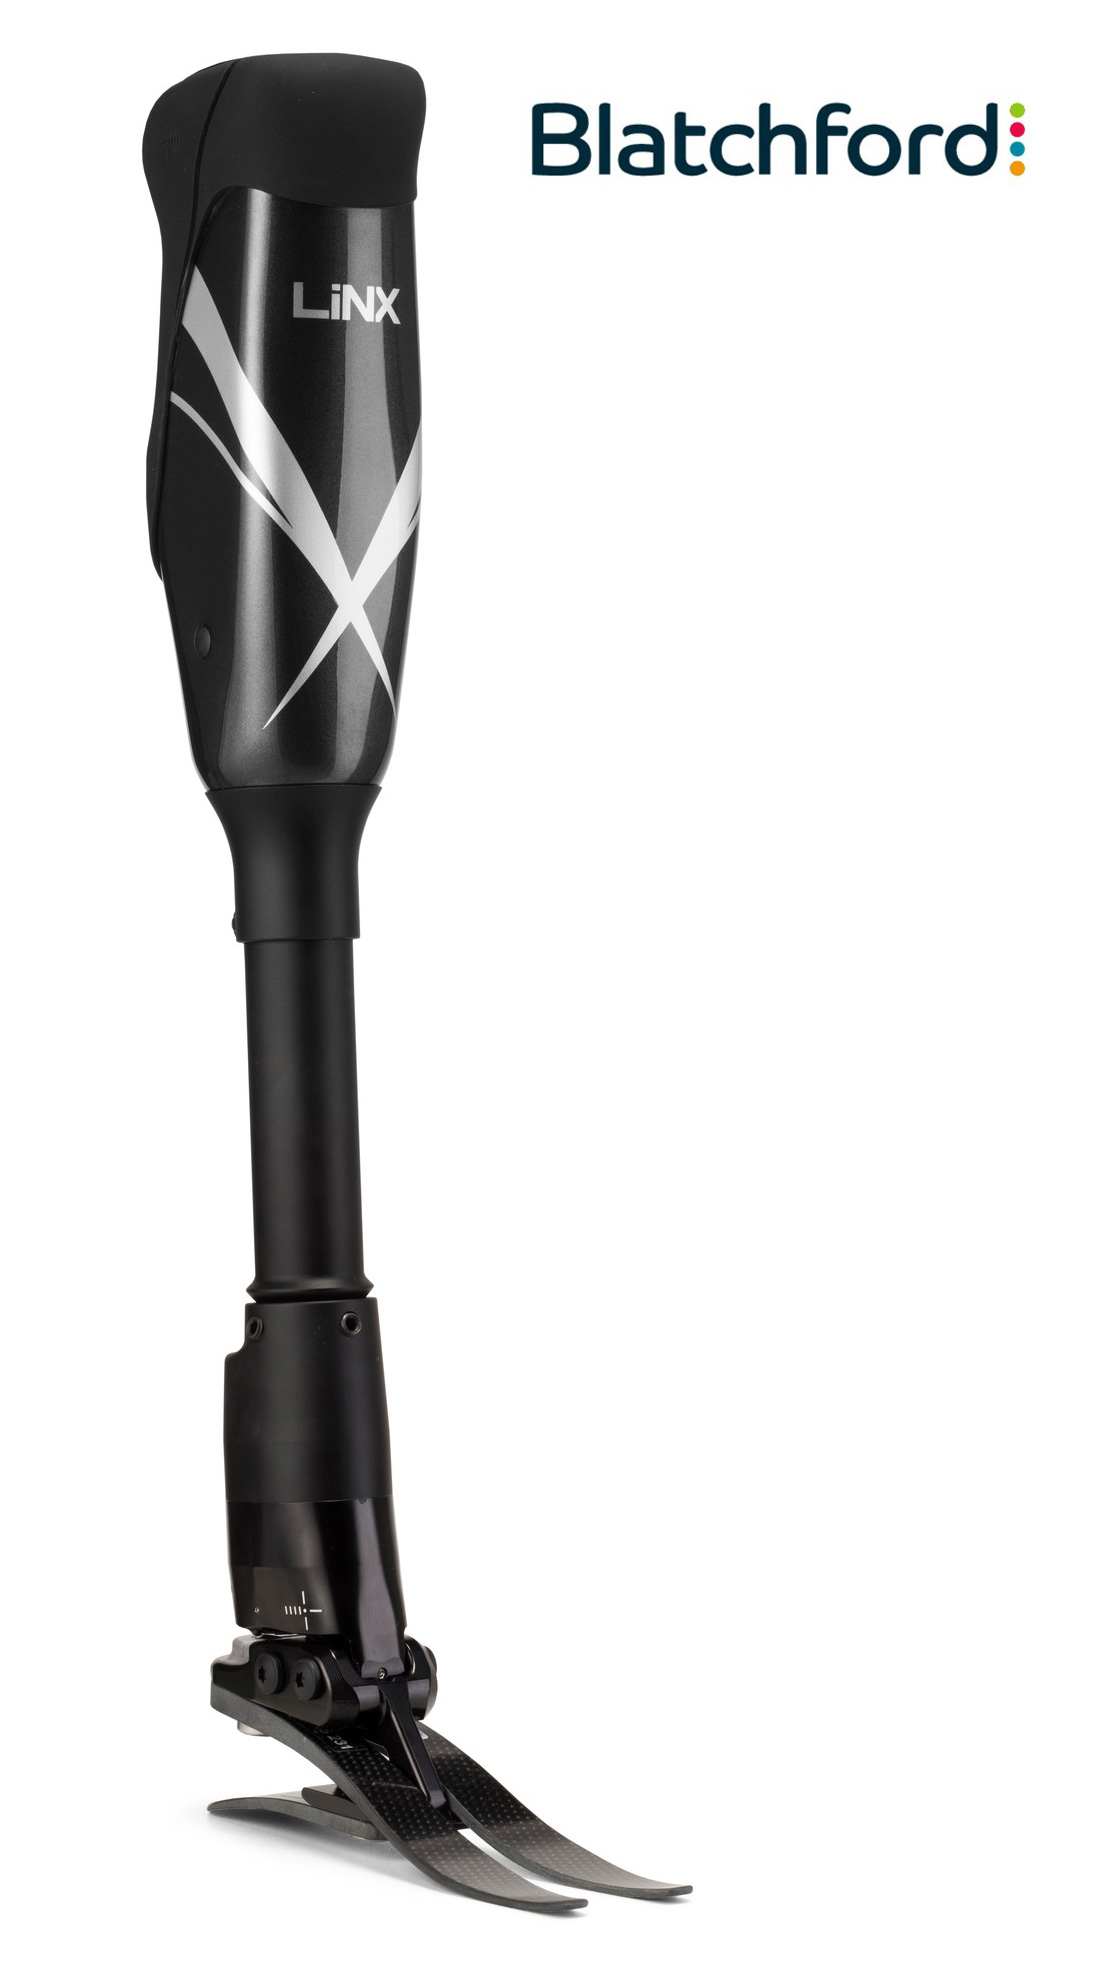 Blatchford Linx Prothesenkniegelenk mit elektronisch-responsivem Prothesenfußgelenk copyright by OrthoRehaNeuhof